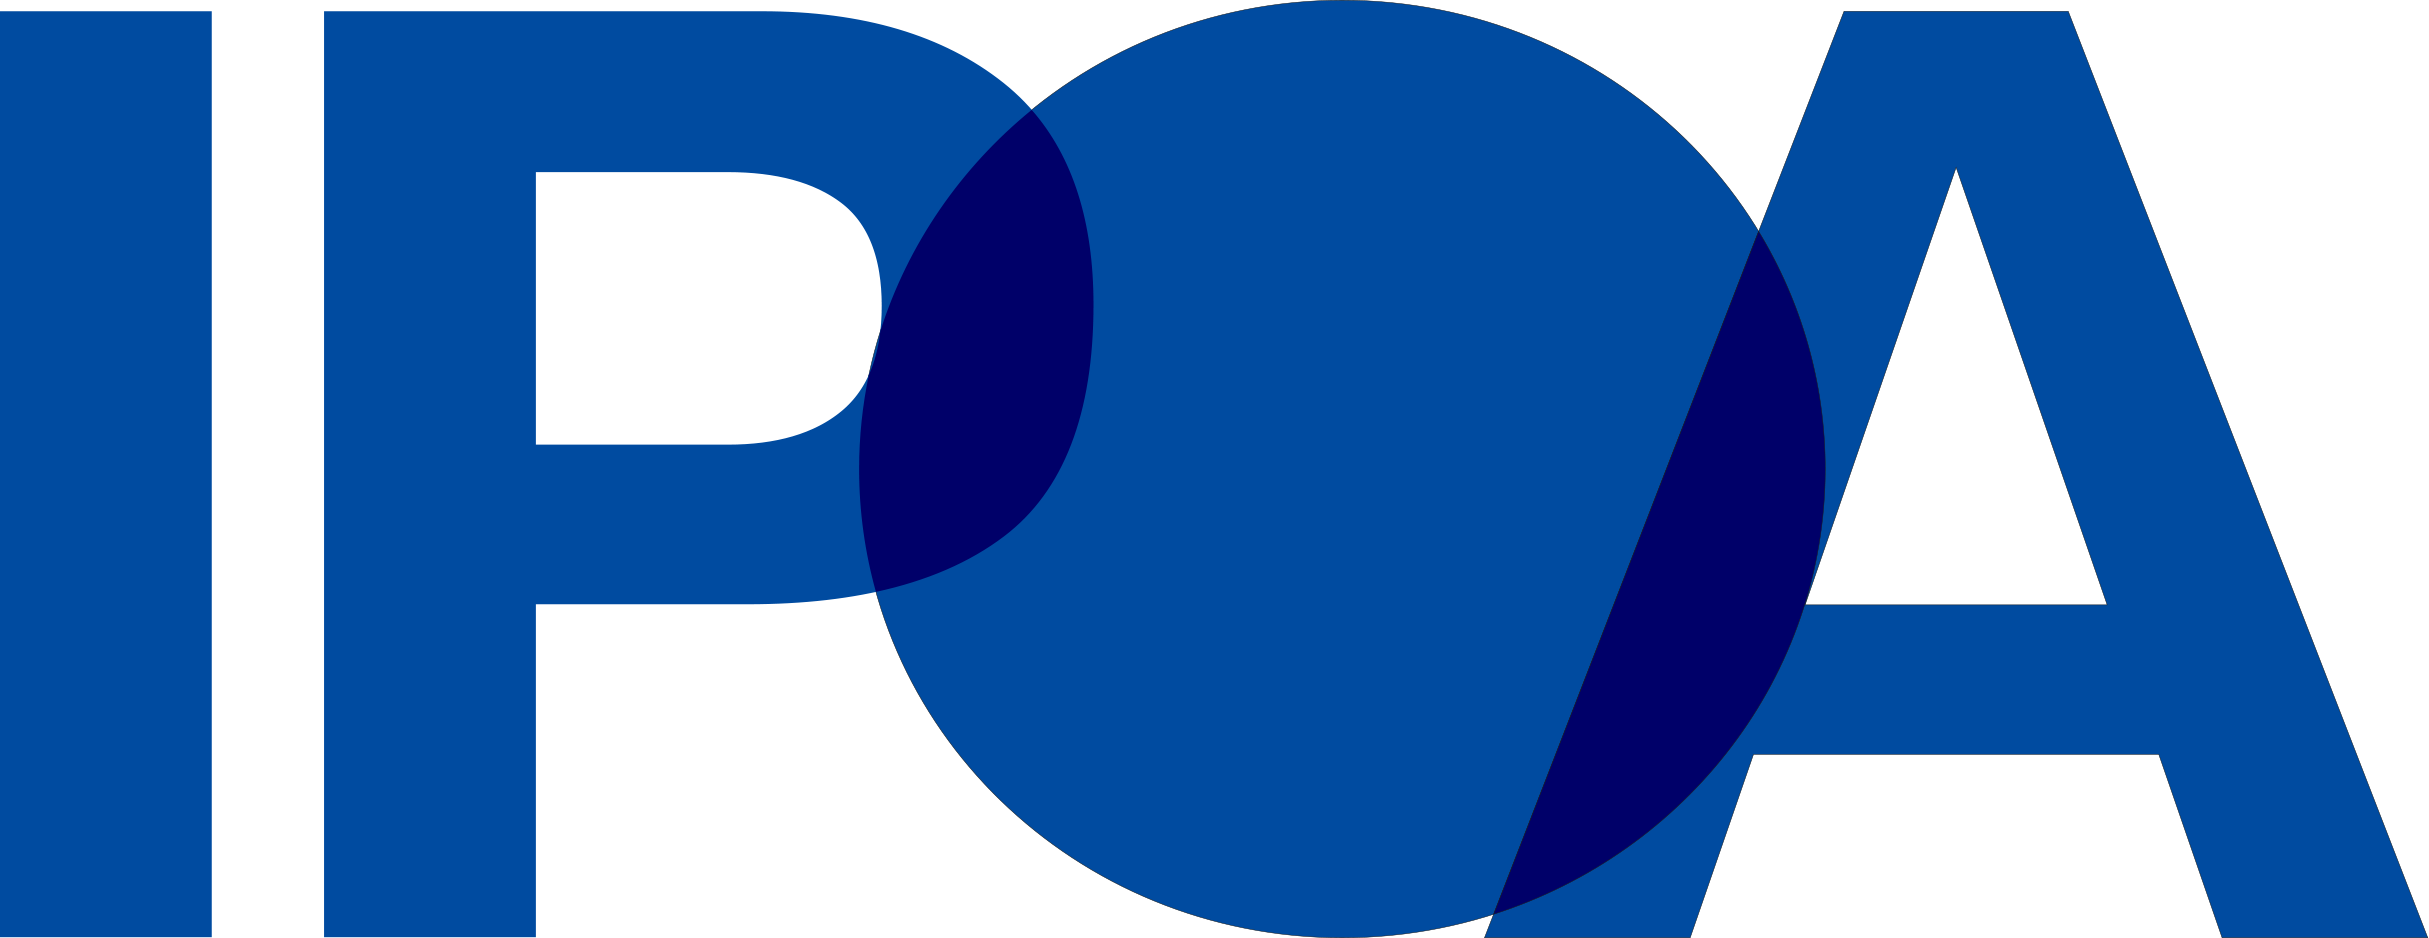 IPOA logo